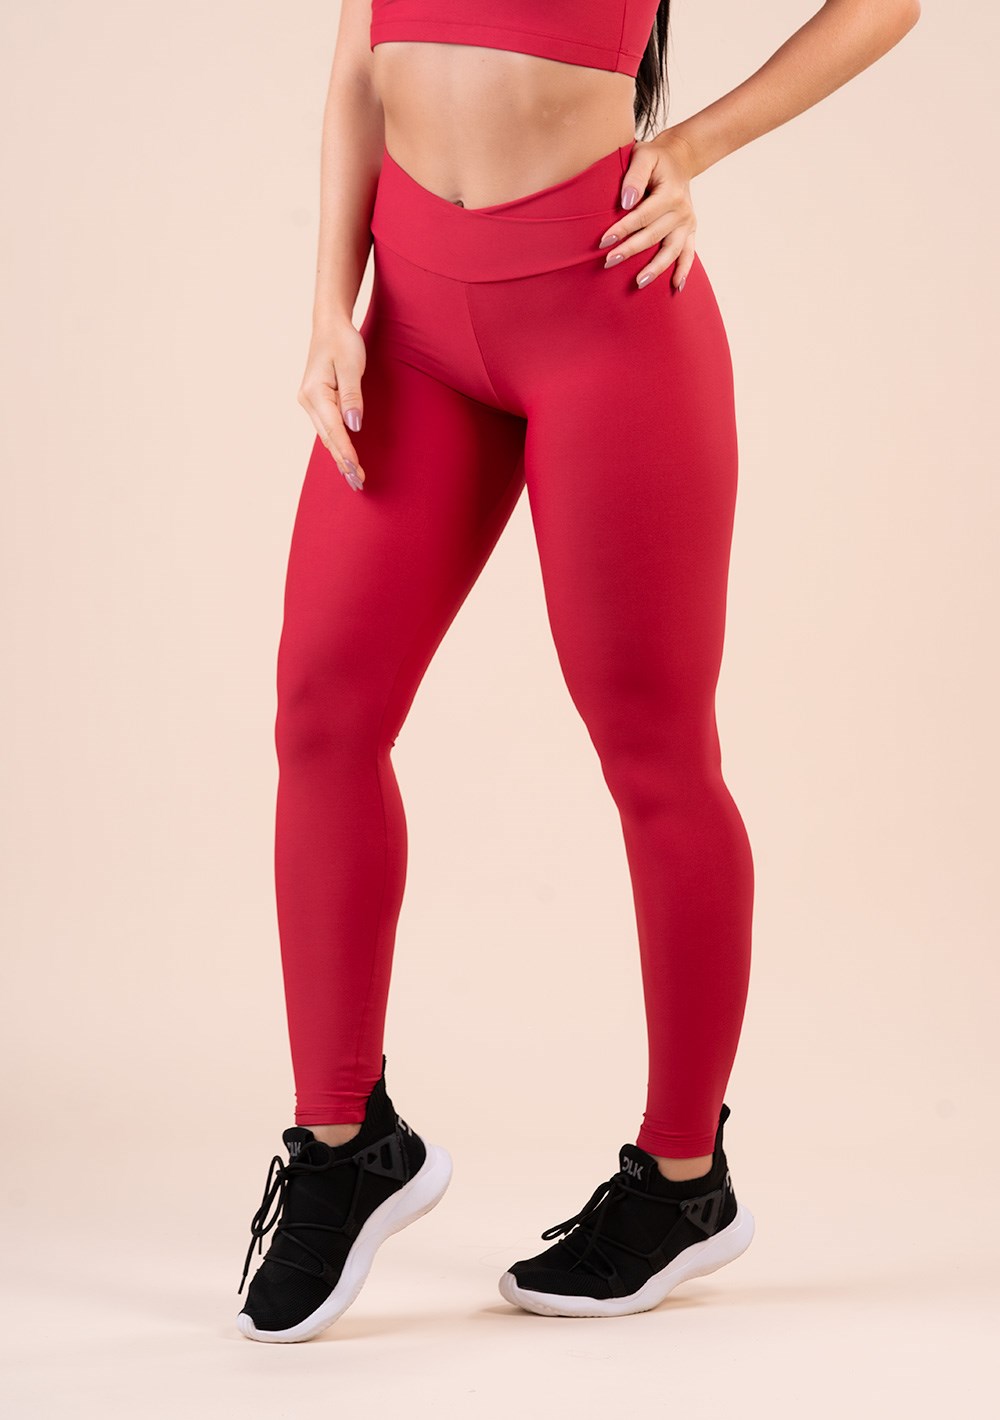 Legging fitness feminina vermelha com cós transpassado action